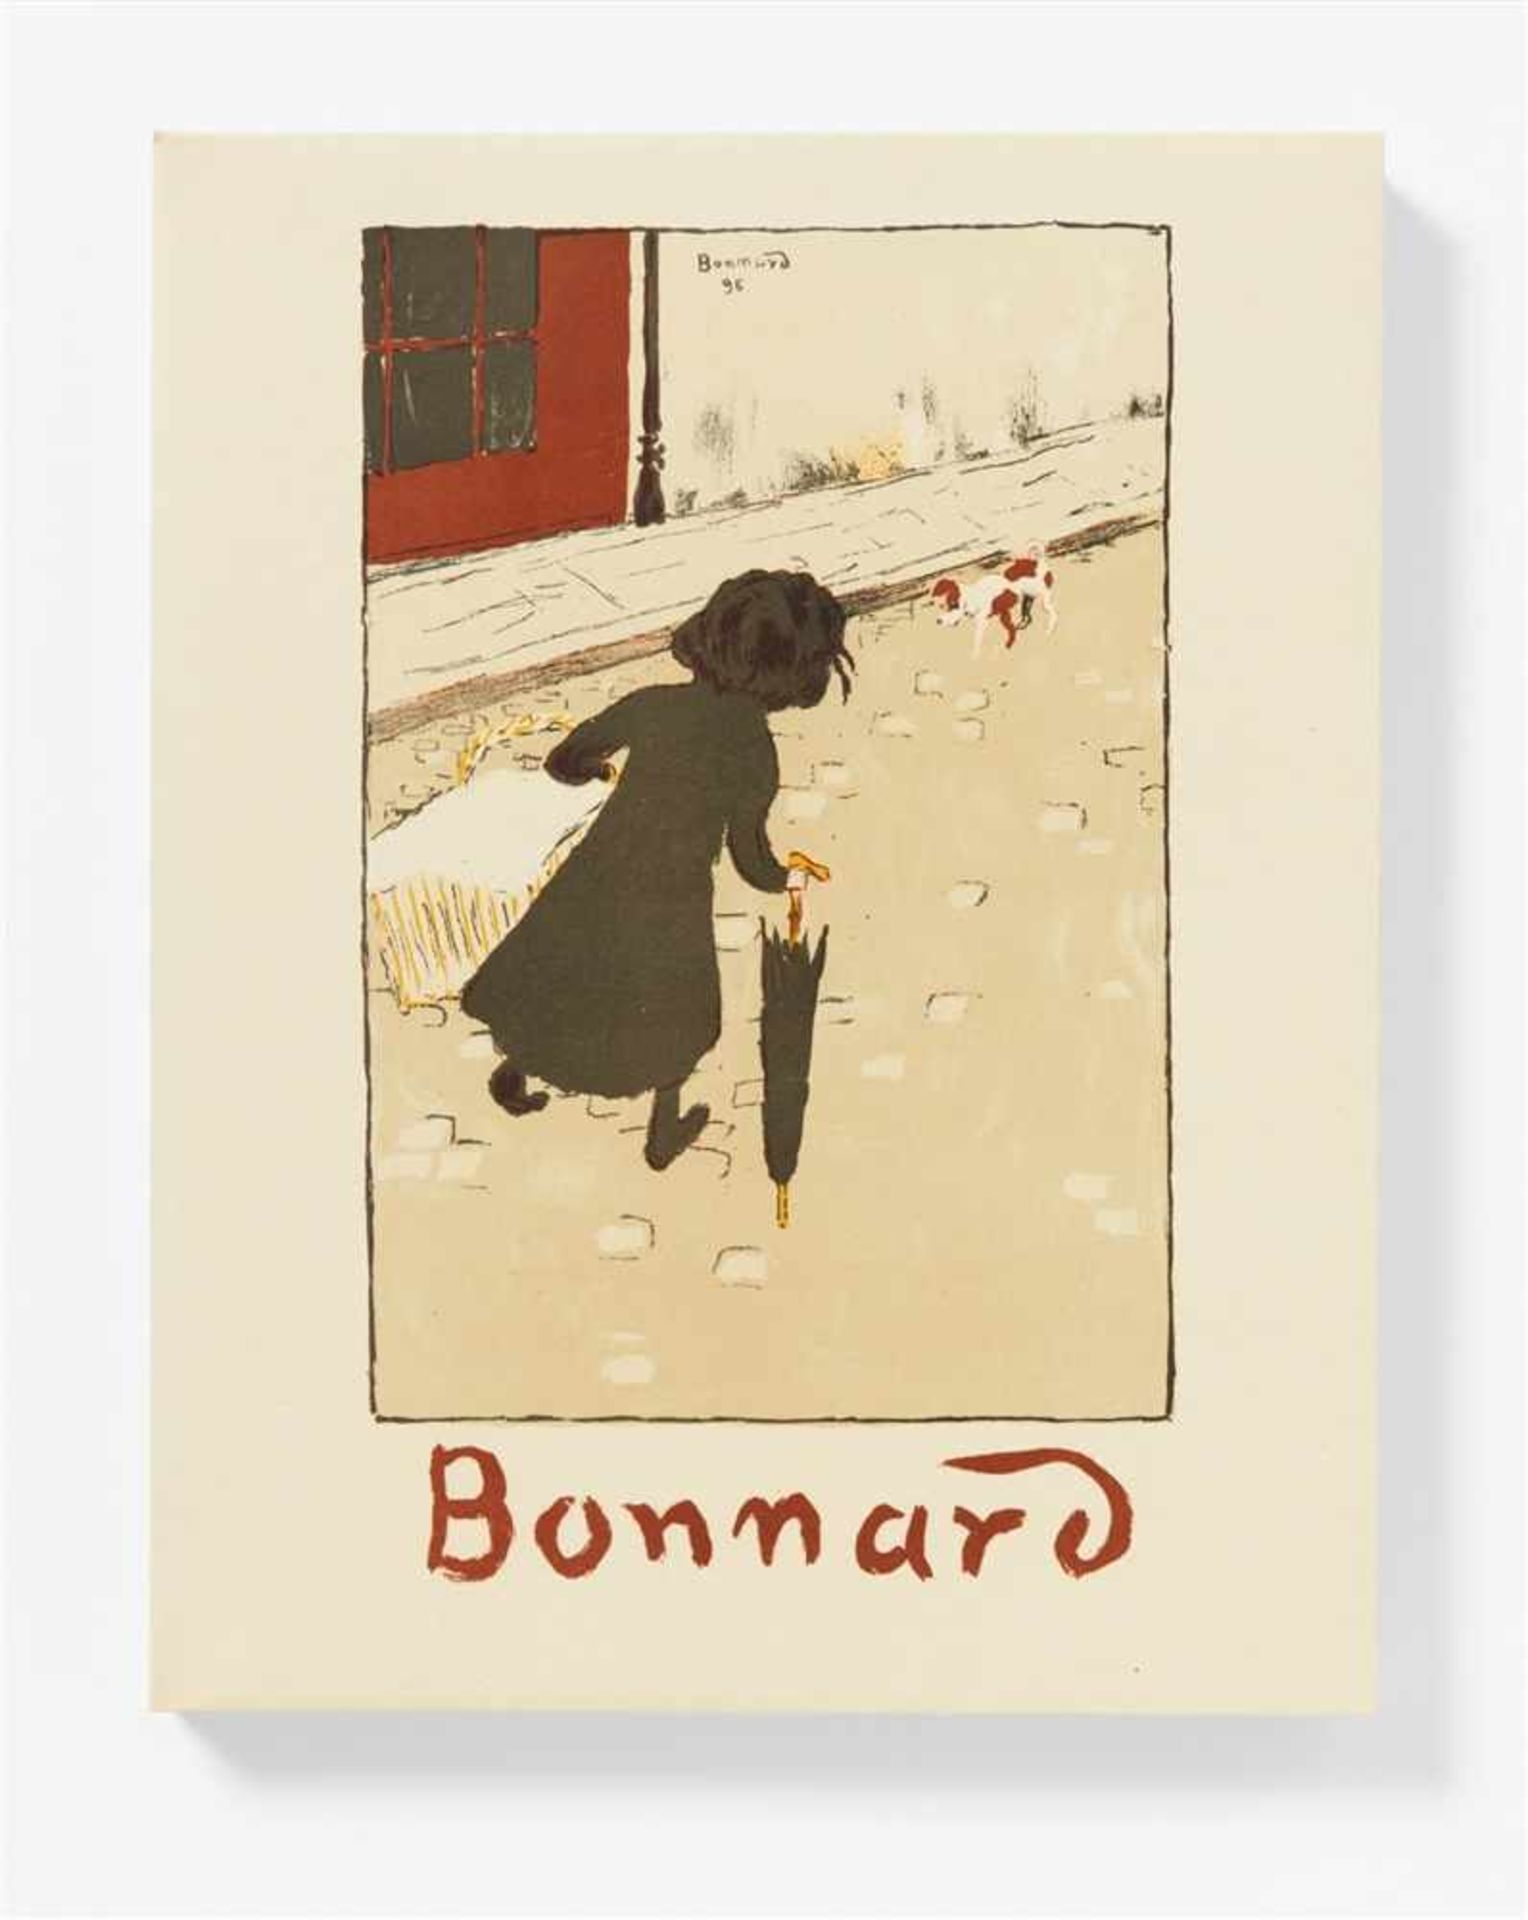 BONNARD, PIERRECLAUDE ROGER-MARX: Bonnard Lithographe. Monte Carlo: André Sauret 1952. 31,7 x 24,5